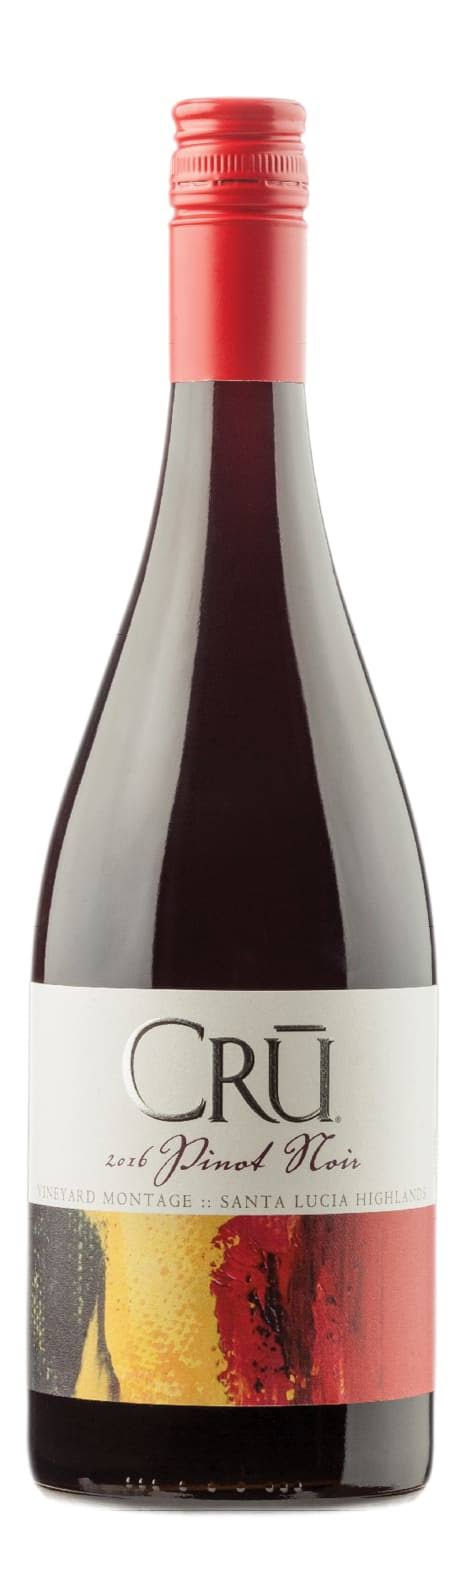 Cru Montage Vineyard Pinot Noir, California (Vintage Varies) - 750 ml bottle